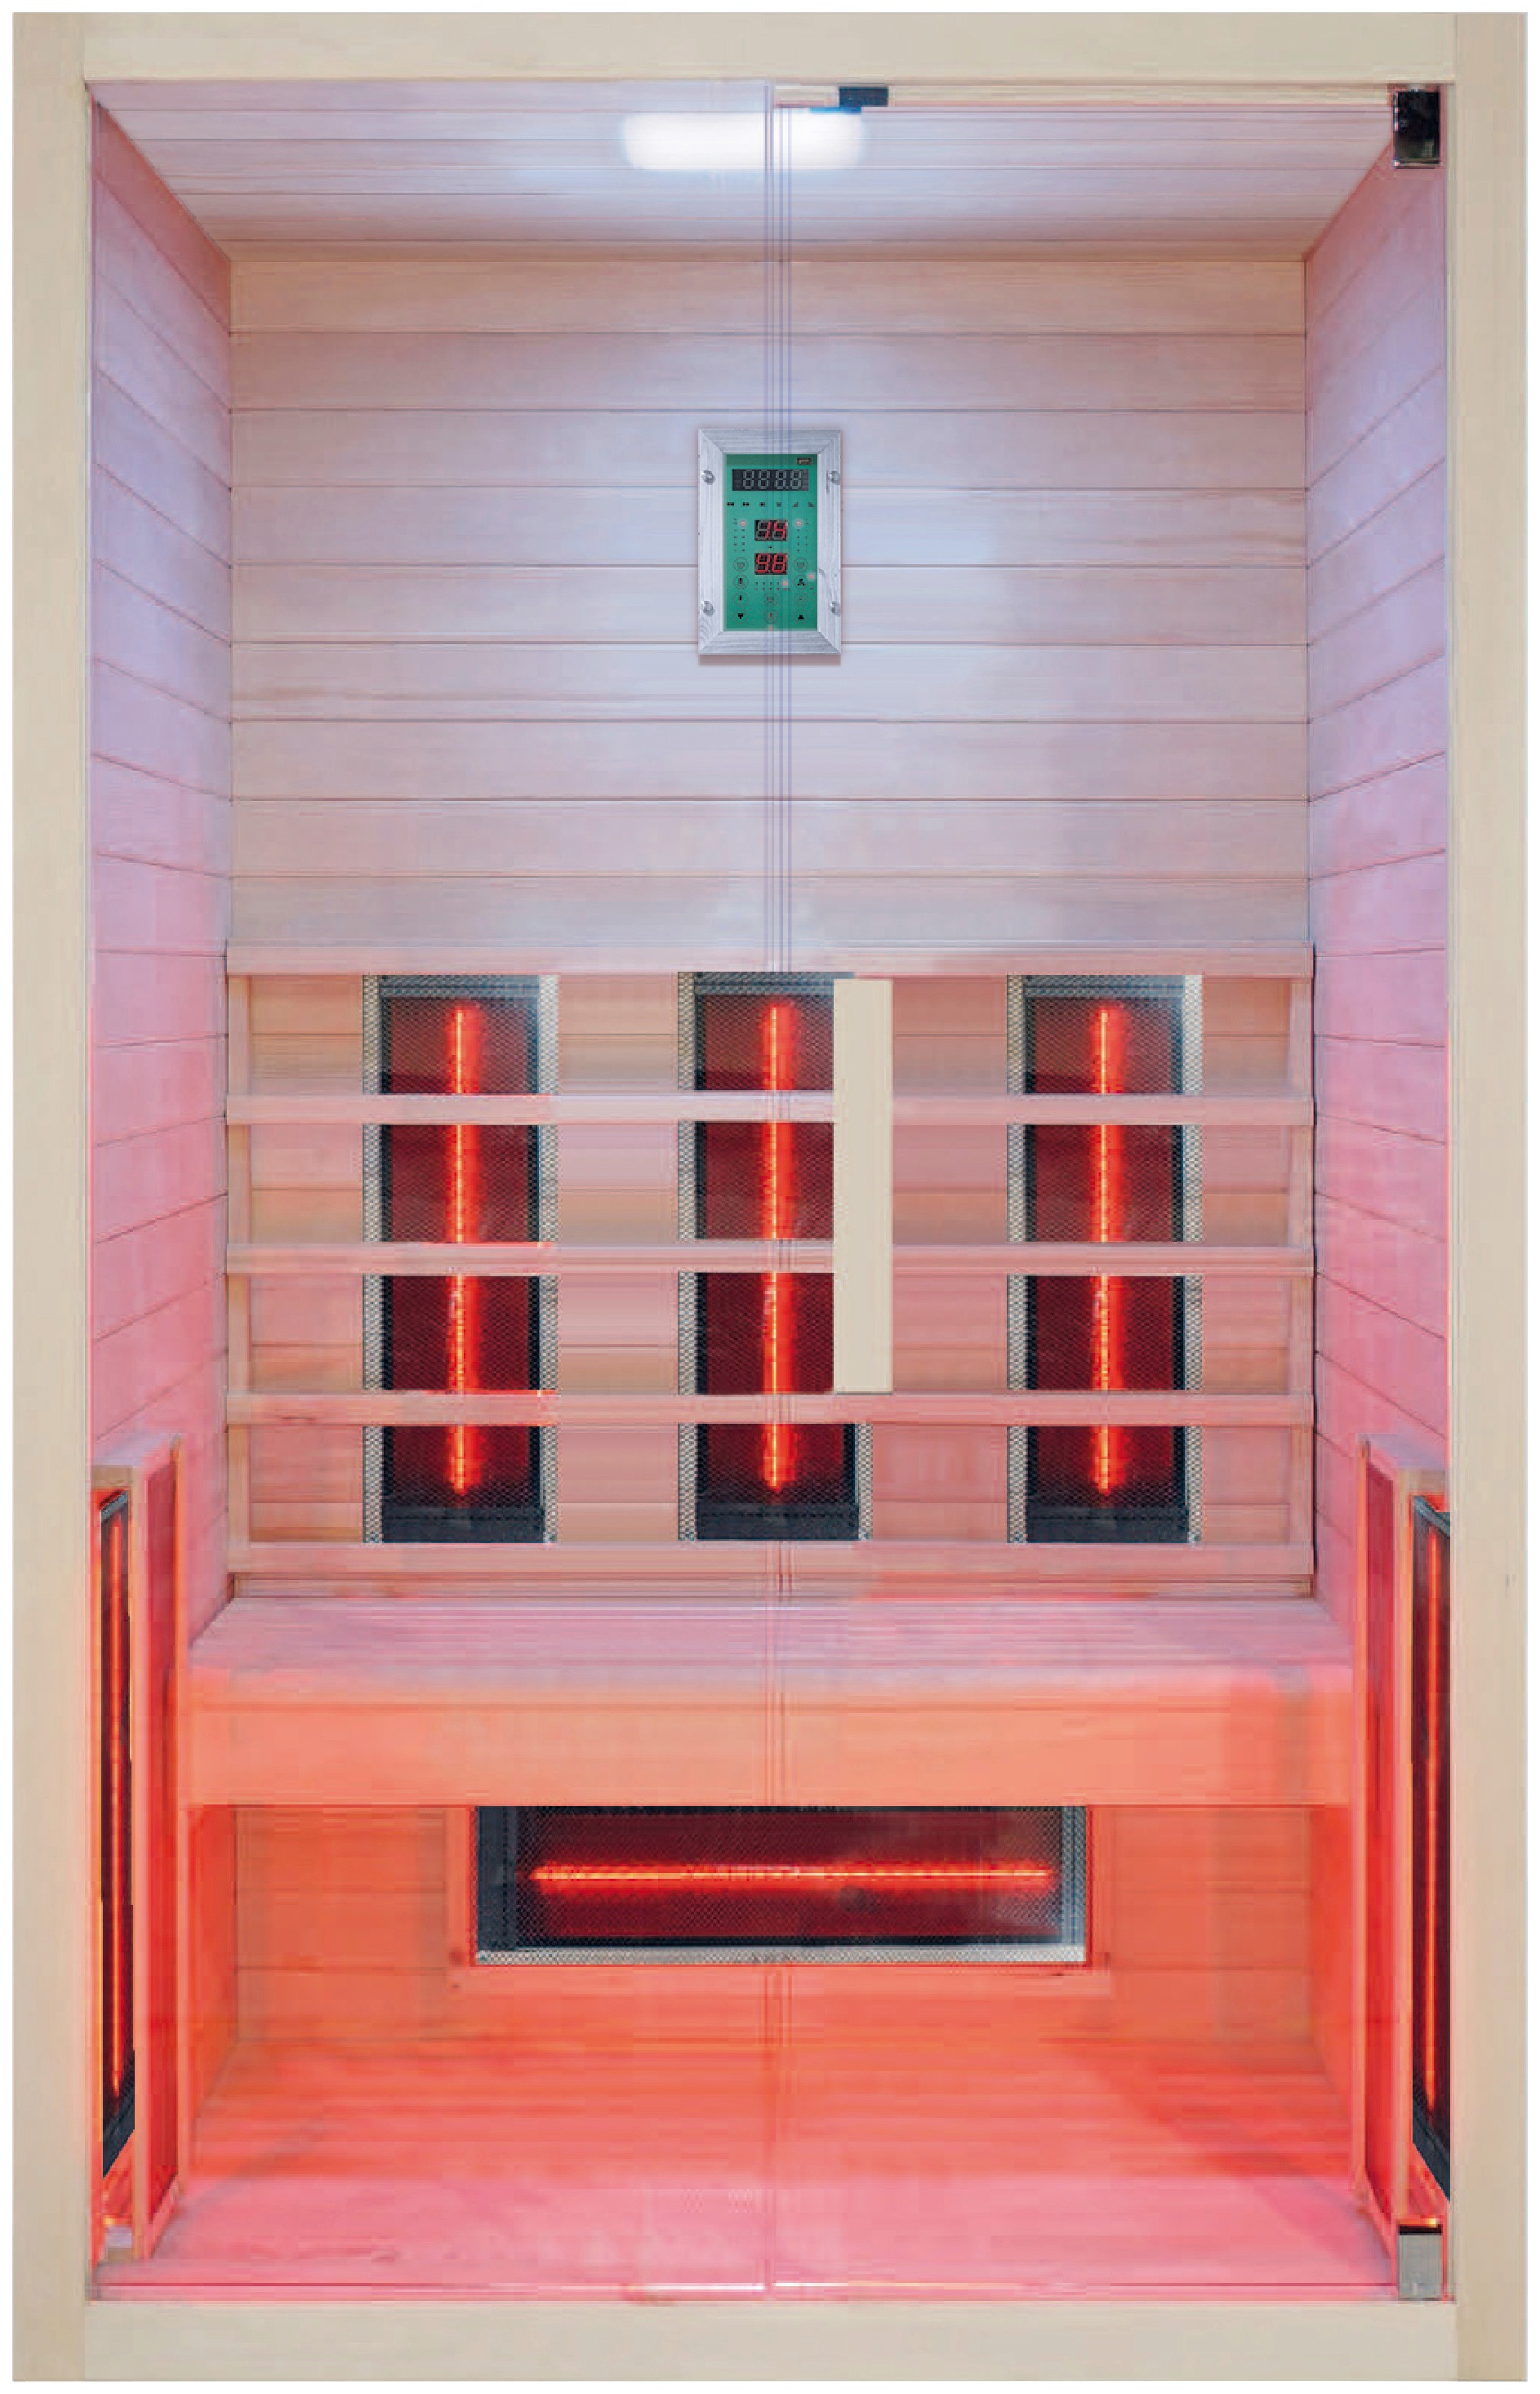 RORO Sauna & Spa Infrarotkabine "ABN H732", Fronteinstieg, inkl Fußboden und Steuergerät